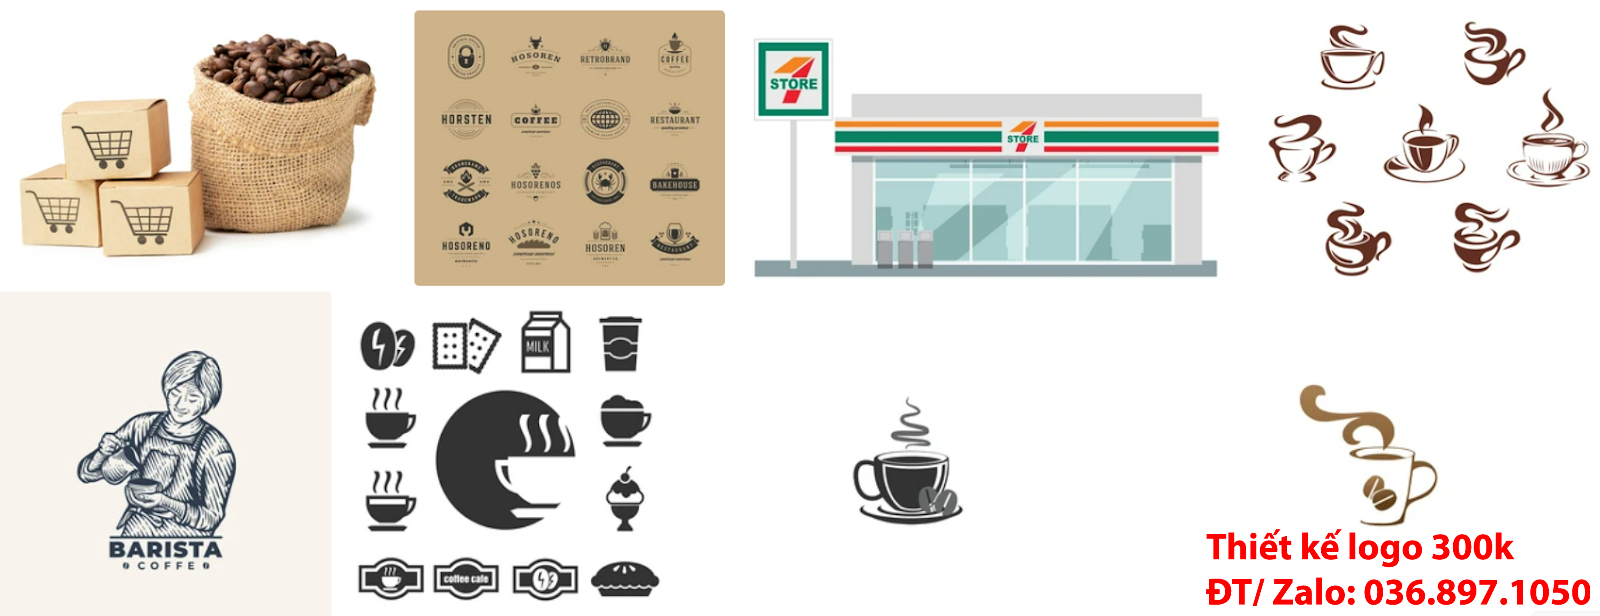 Công ty cung cấp mẫu thiết kế logo cà phê cafe coffee đẹp nhất hiện nay chất lượng tại thành phố Hồ Chí Minh